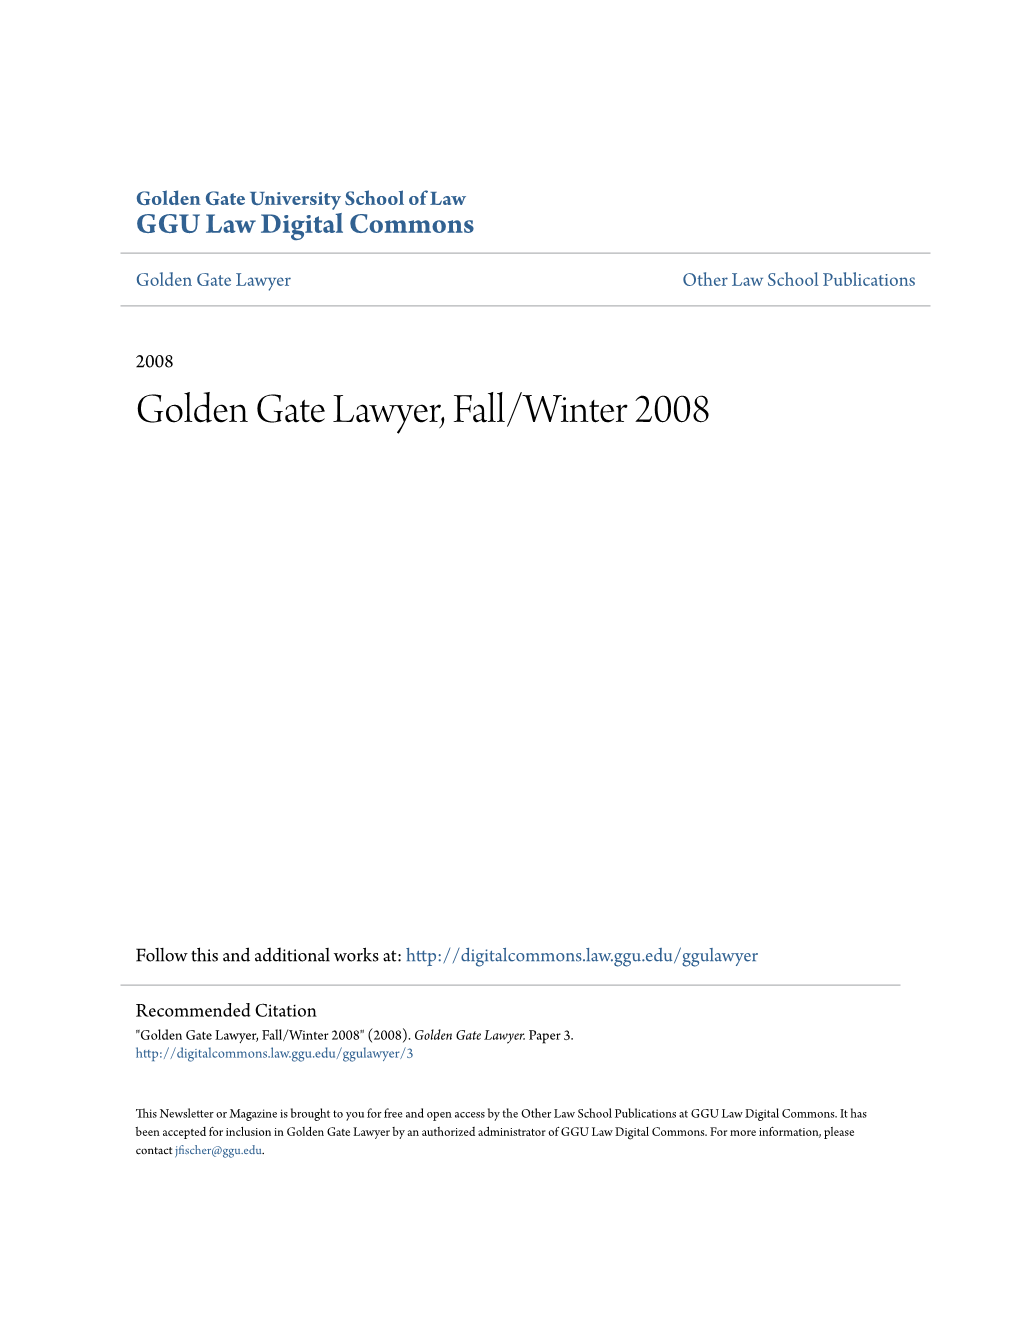 Golden Gate Lawyer, Fall/Winter 2008